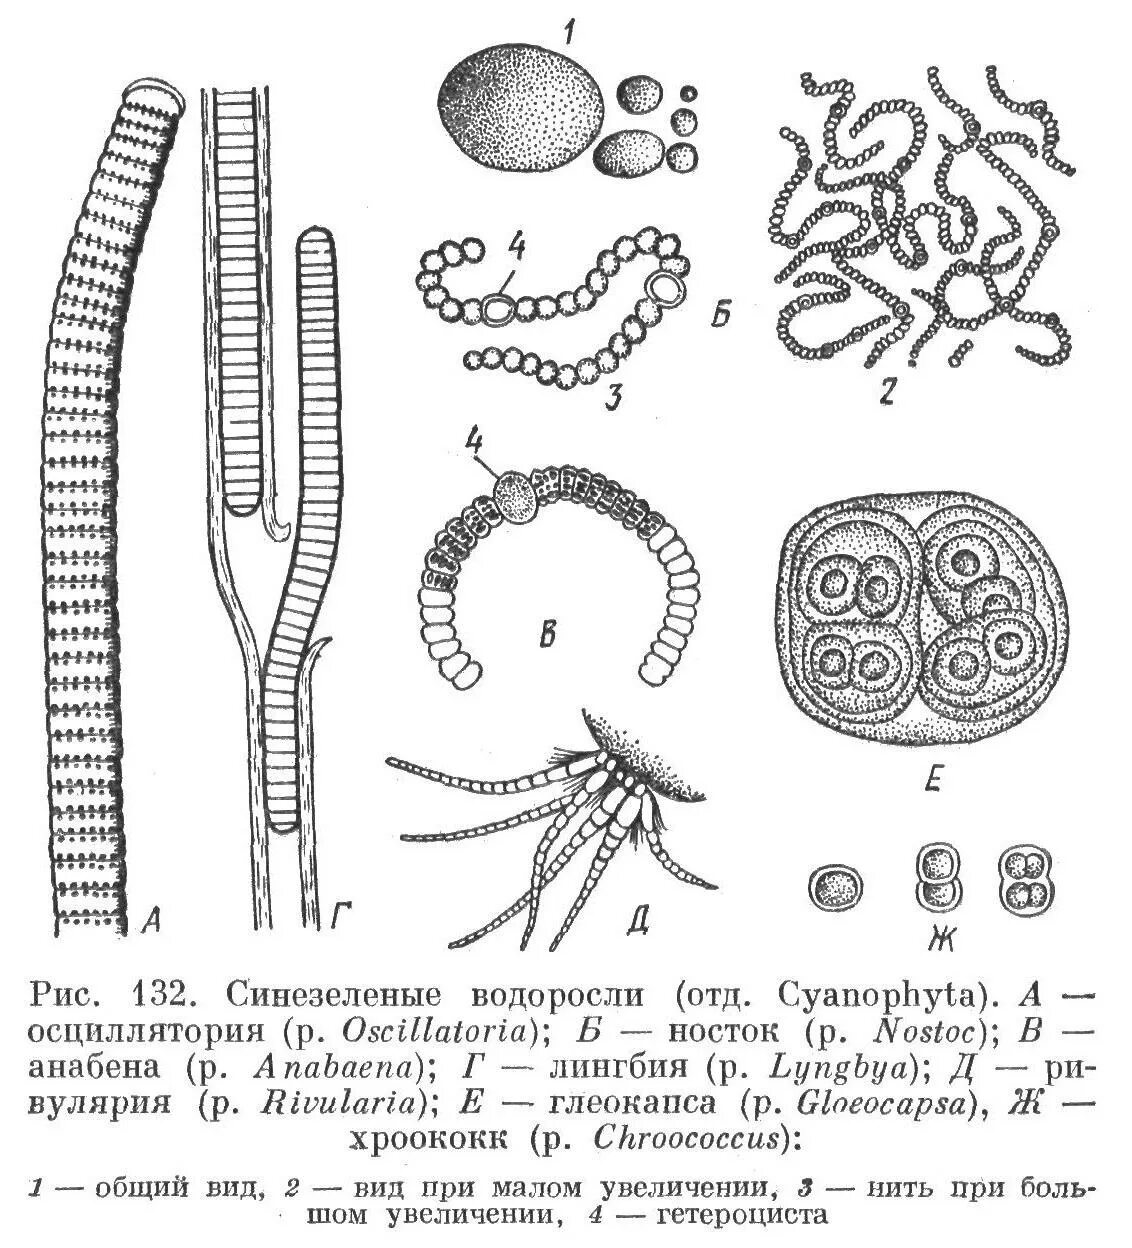 Зеленые водоросли формы. Цианобактерии осциллатория. Цианобактерия лингбия. Синезеленые цианобактерии. Синезеленые водоросли (Cyanophyta).